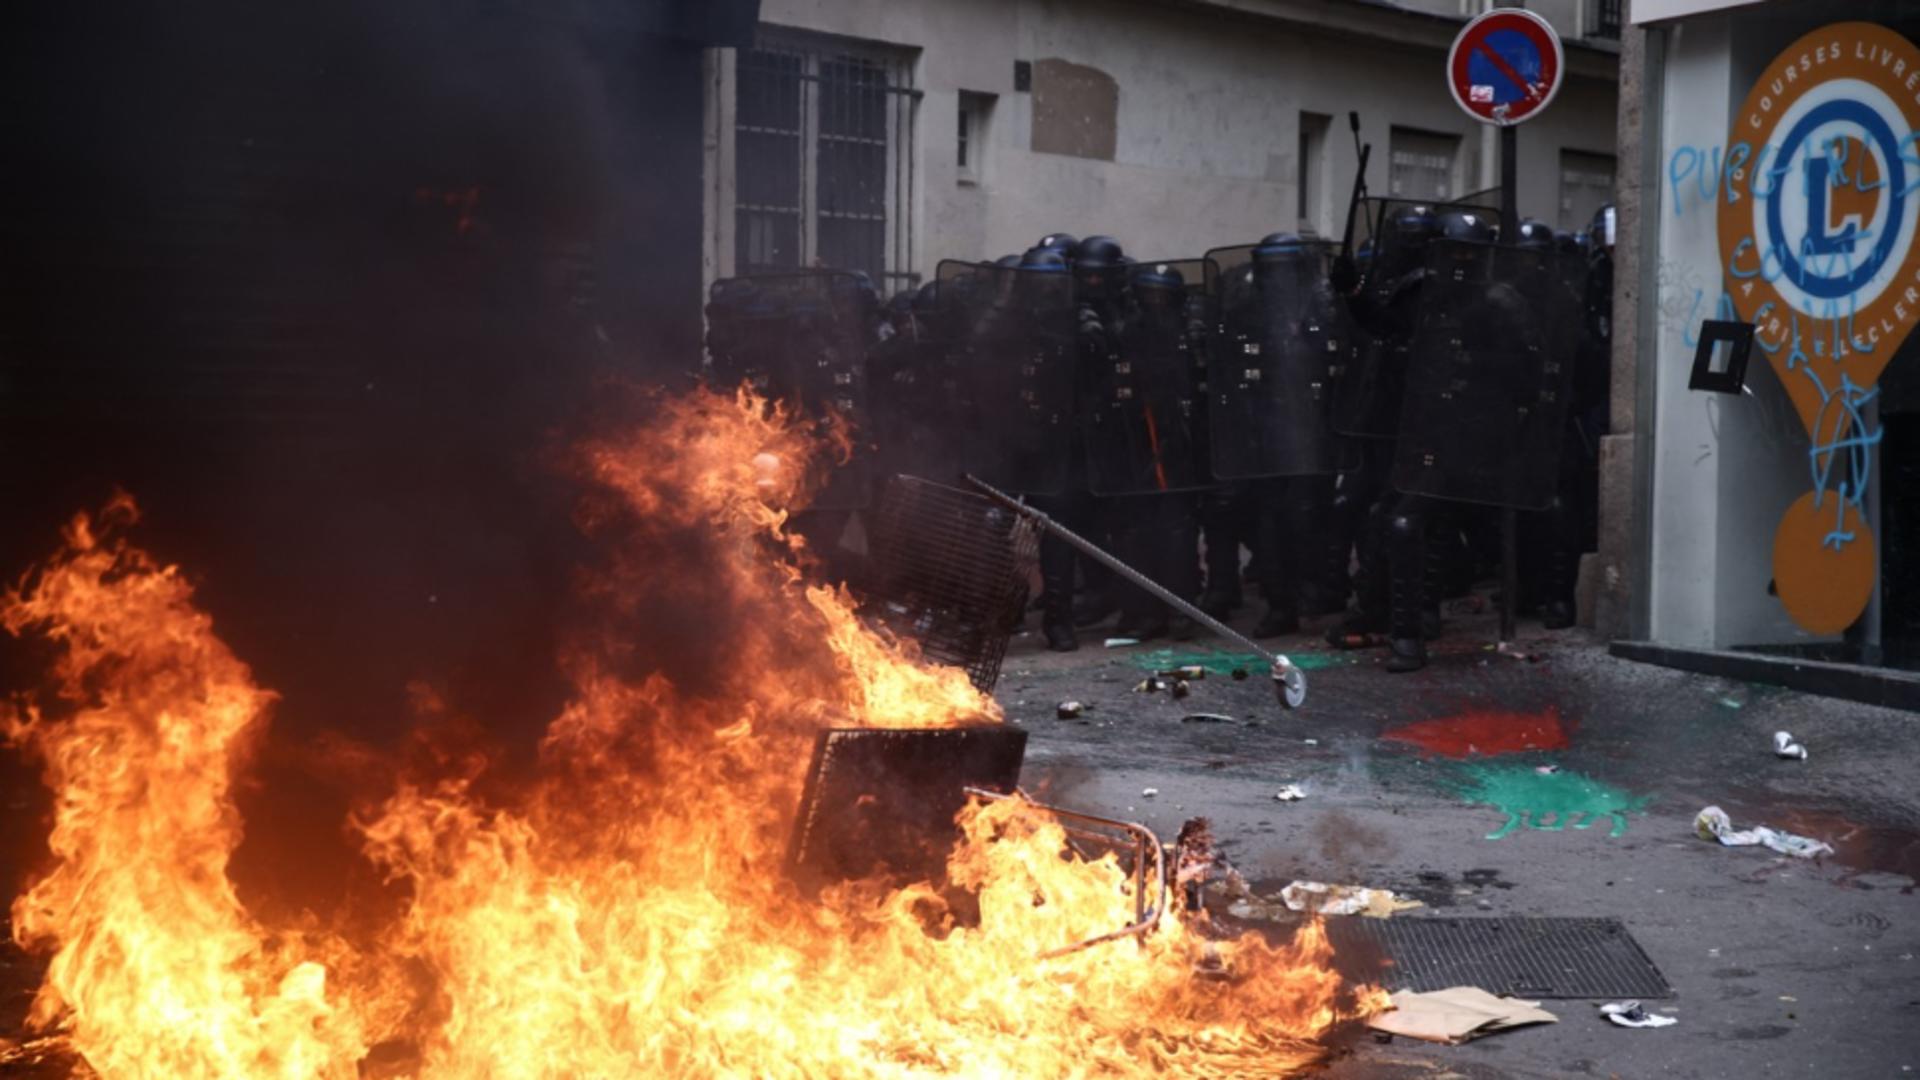 Haos în Franța. Noi proteste violente Foto: Profi Media